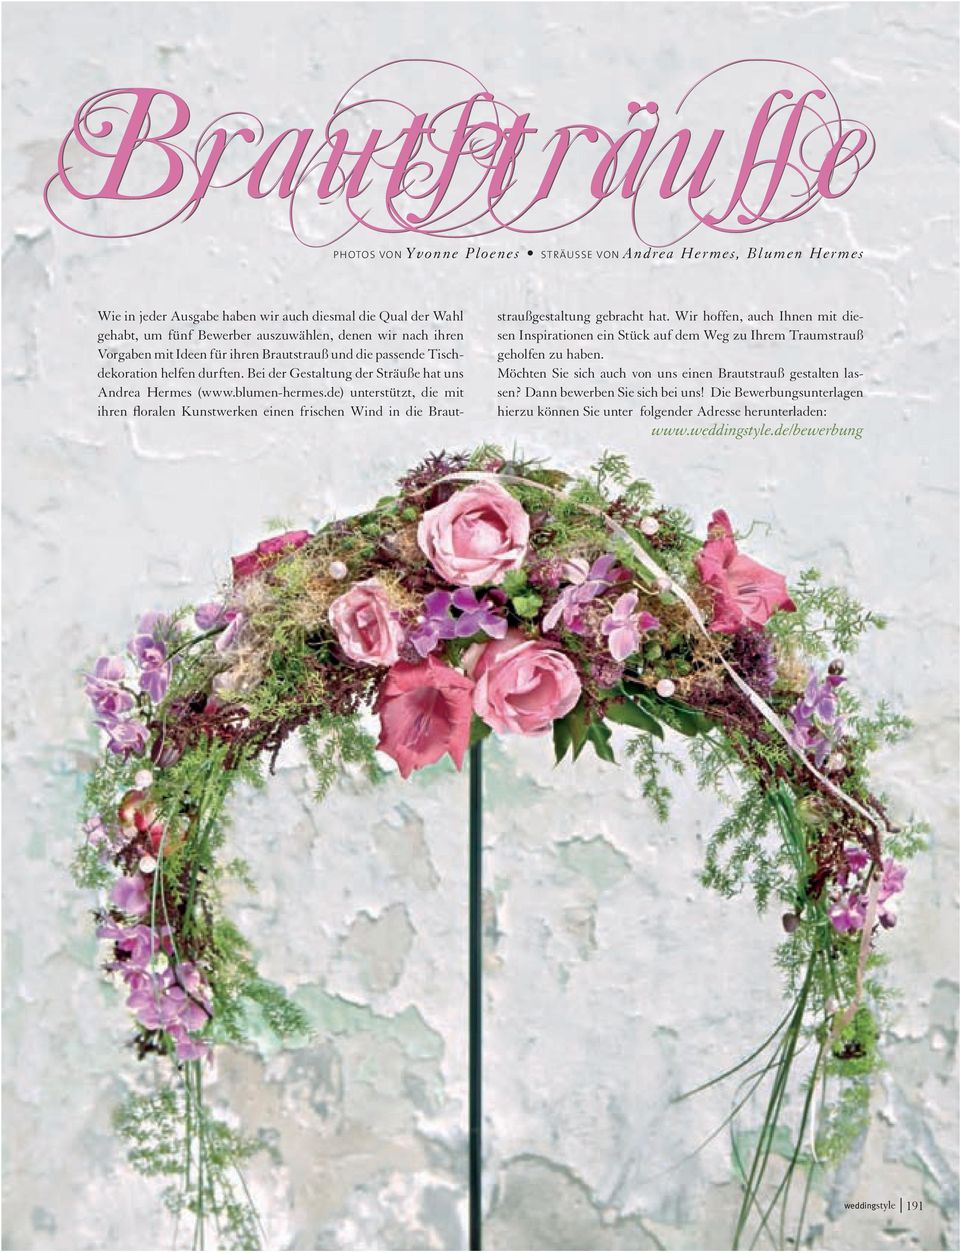 de) unterstützt, die mit ihren floralen Kunstwerken einen frischen Wind in die Brautstraußgestaltung gebracht hat.